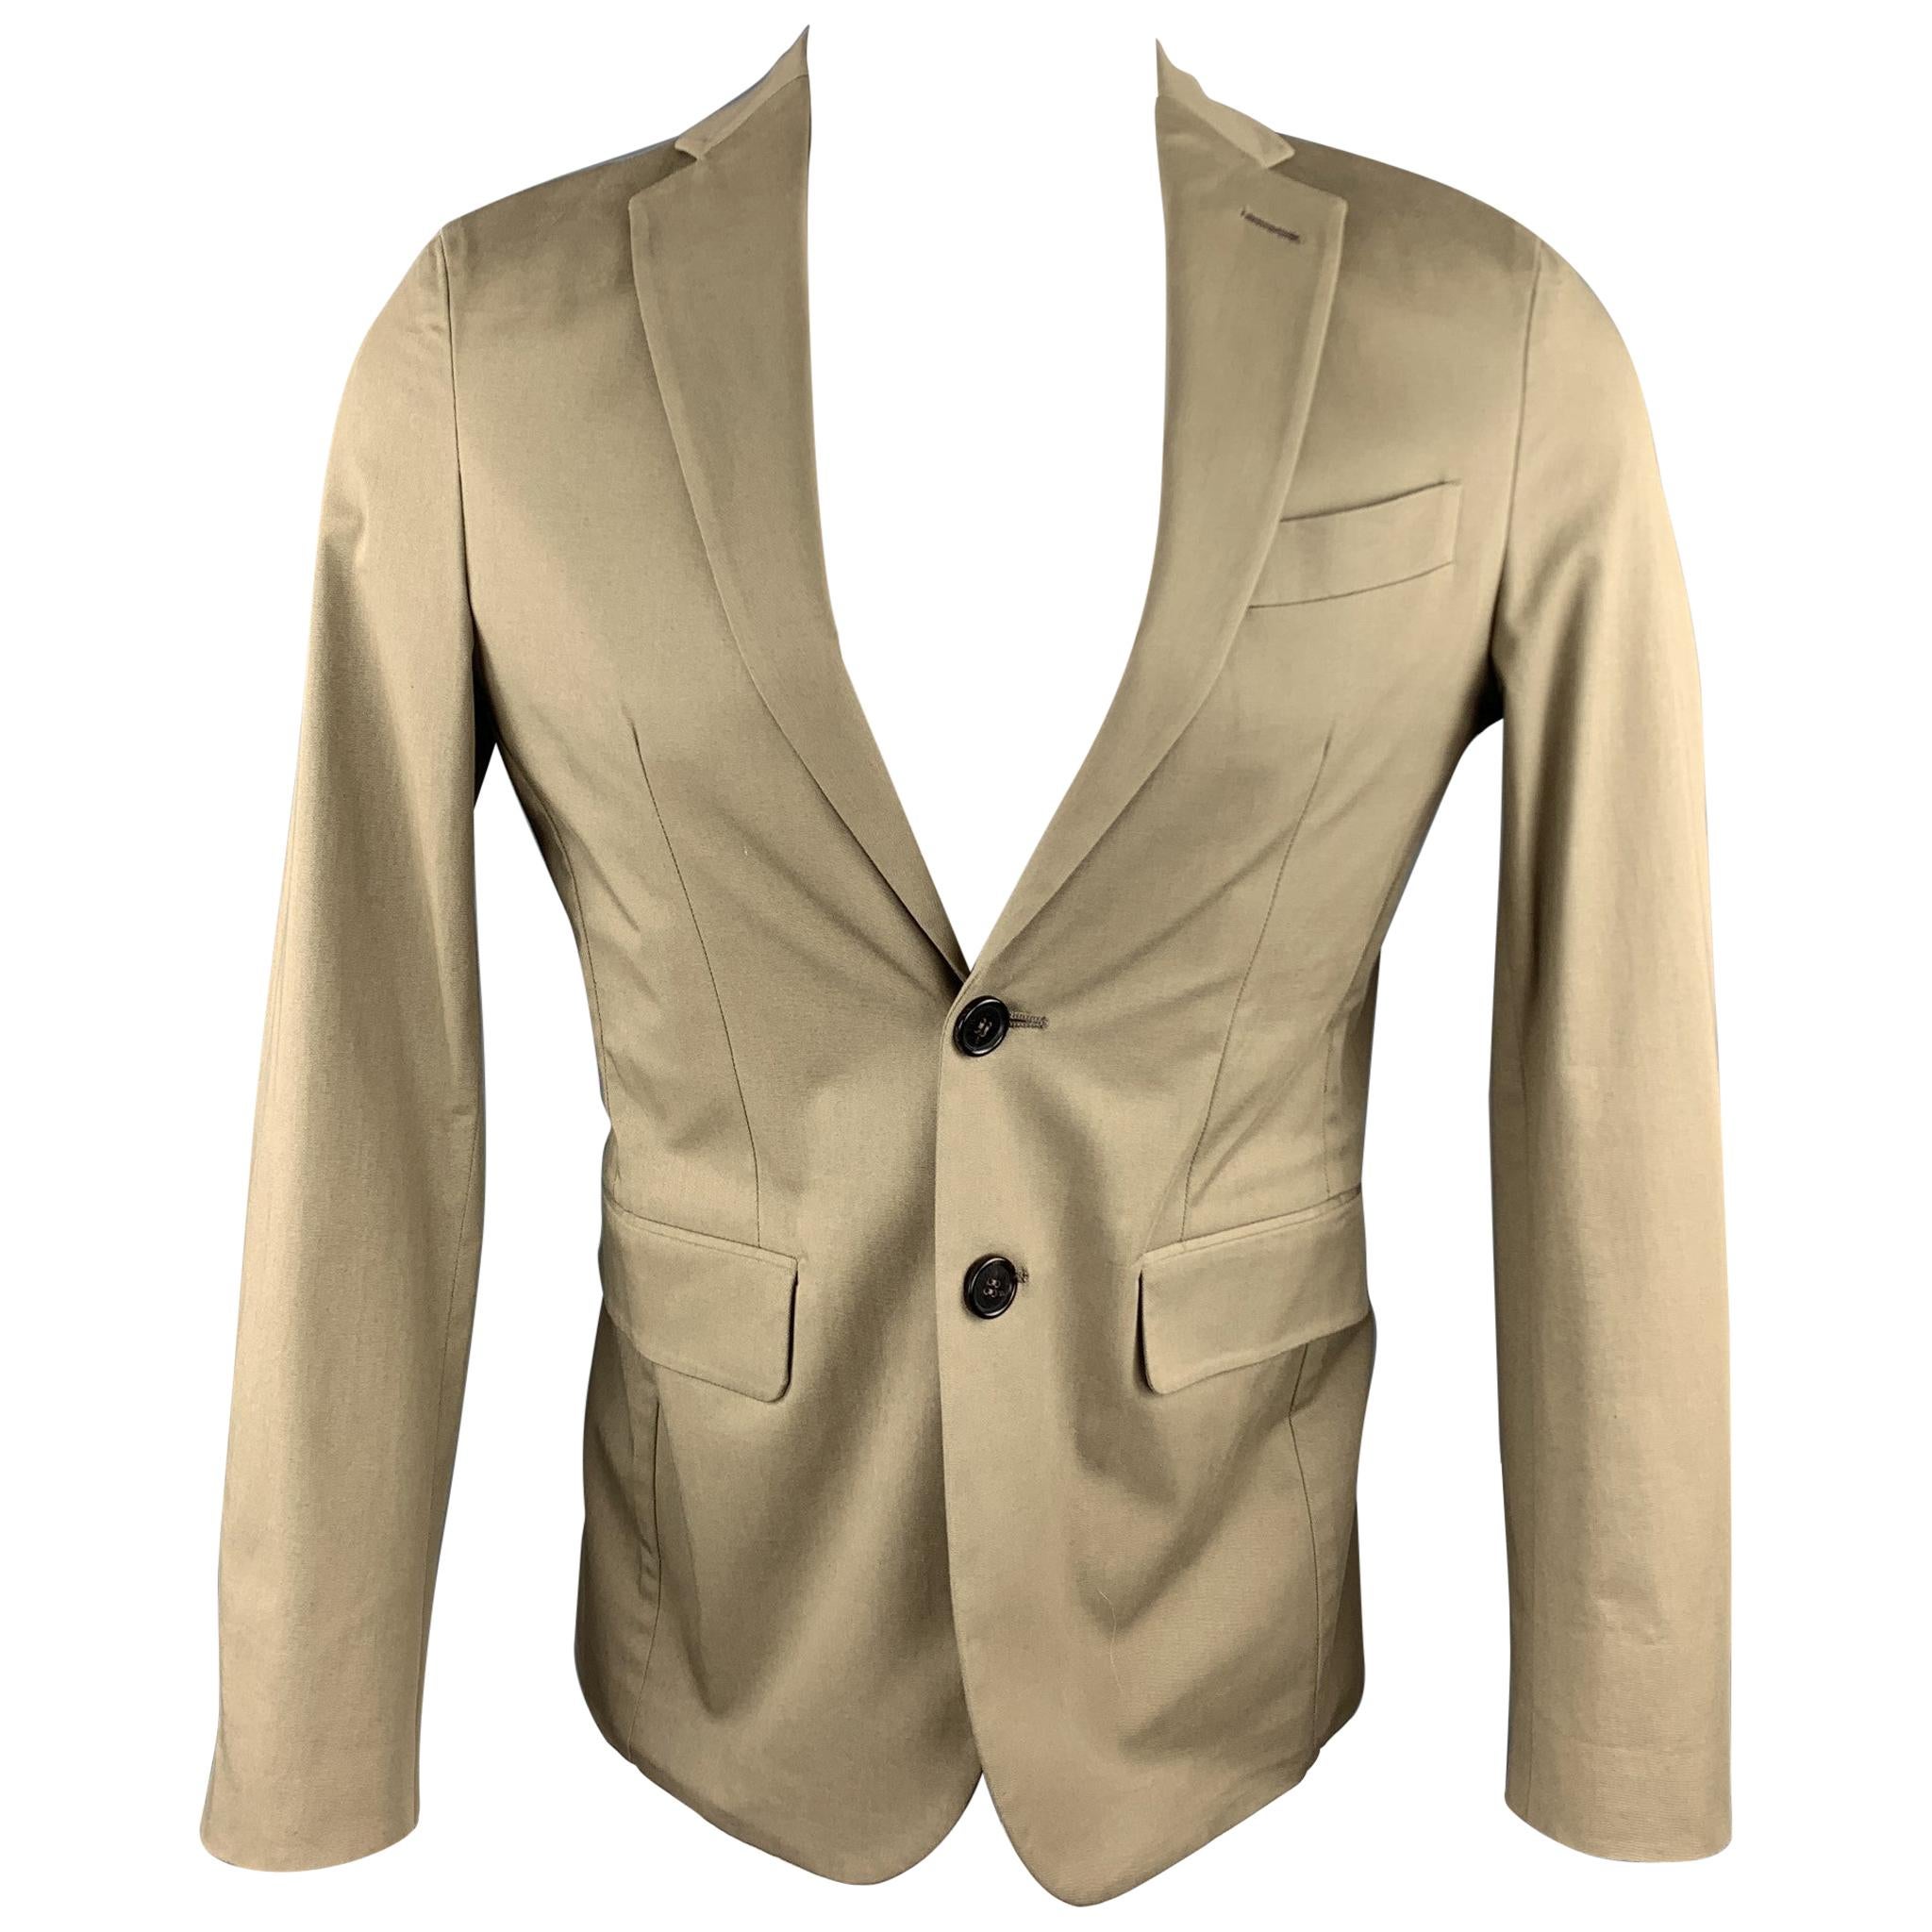 DSQUARED2 Size US 36 / IT 46 Taupe Cotton Blend Notch Lapel Sport Coat Jacket